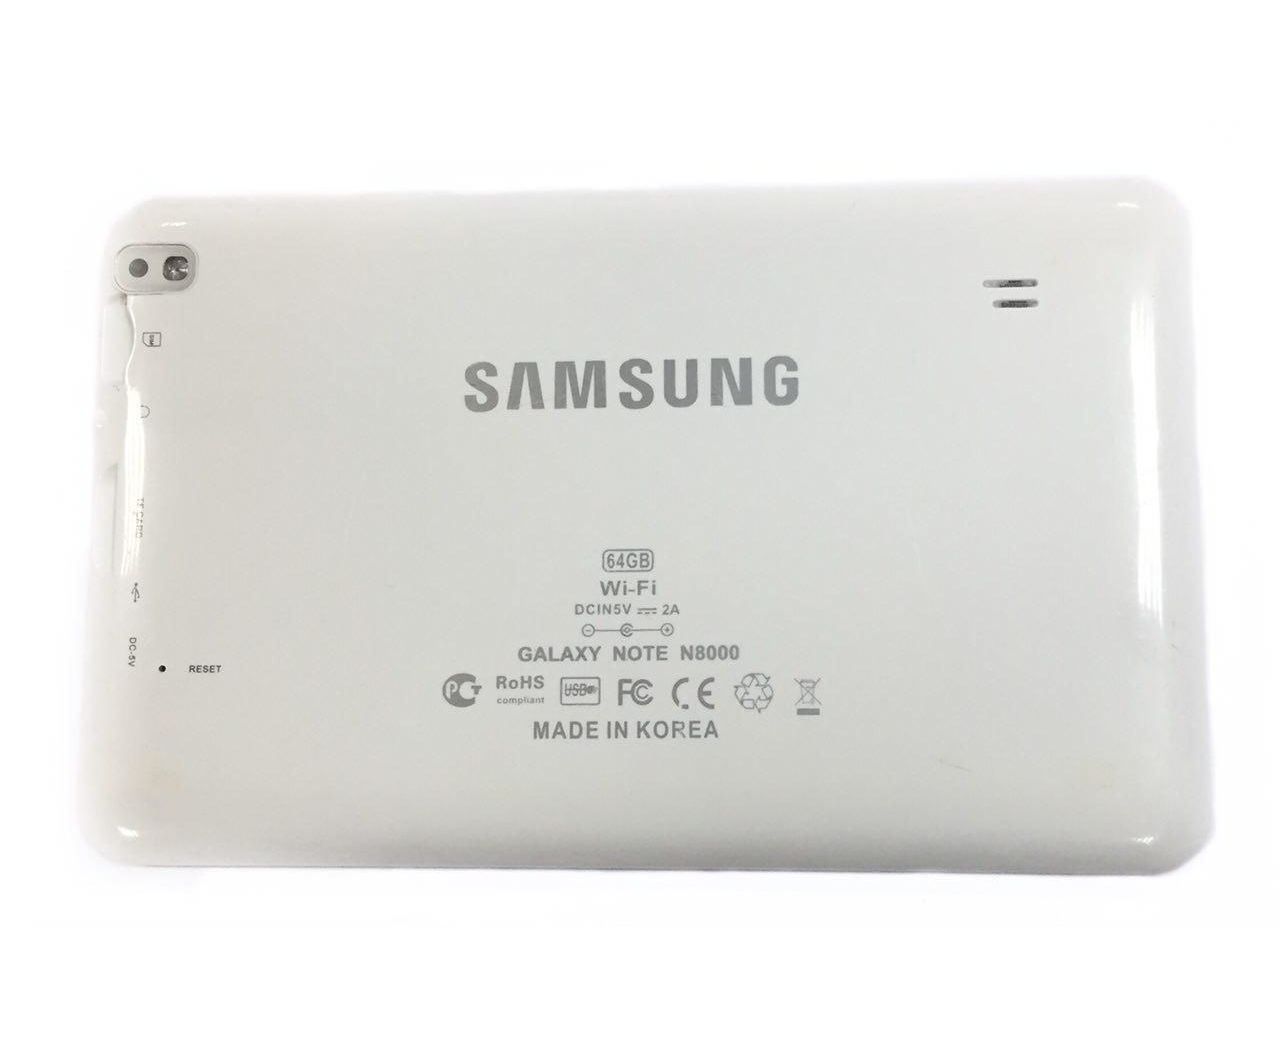 Galaxy note n8000 64gb. Samsung Galaxy Note n8000. Samsung Galaxy Note 10.1 n8000. Планшет Samsung Galaxy Note 8000. Samsung Galaxy Note 8000 64gb.